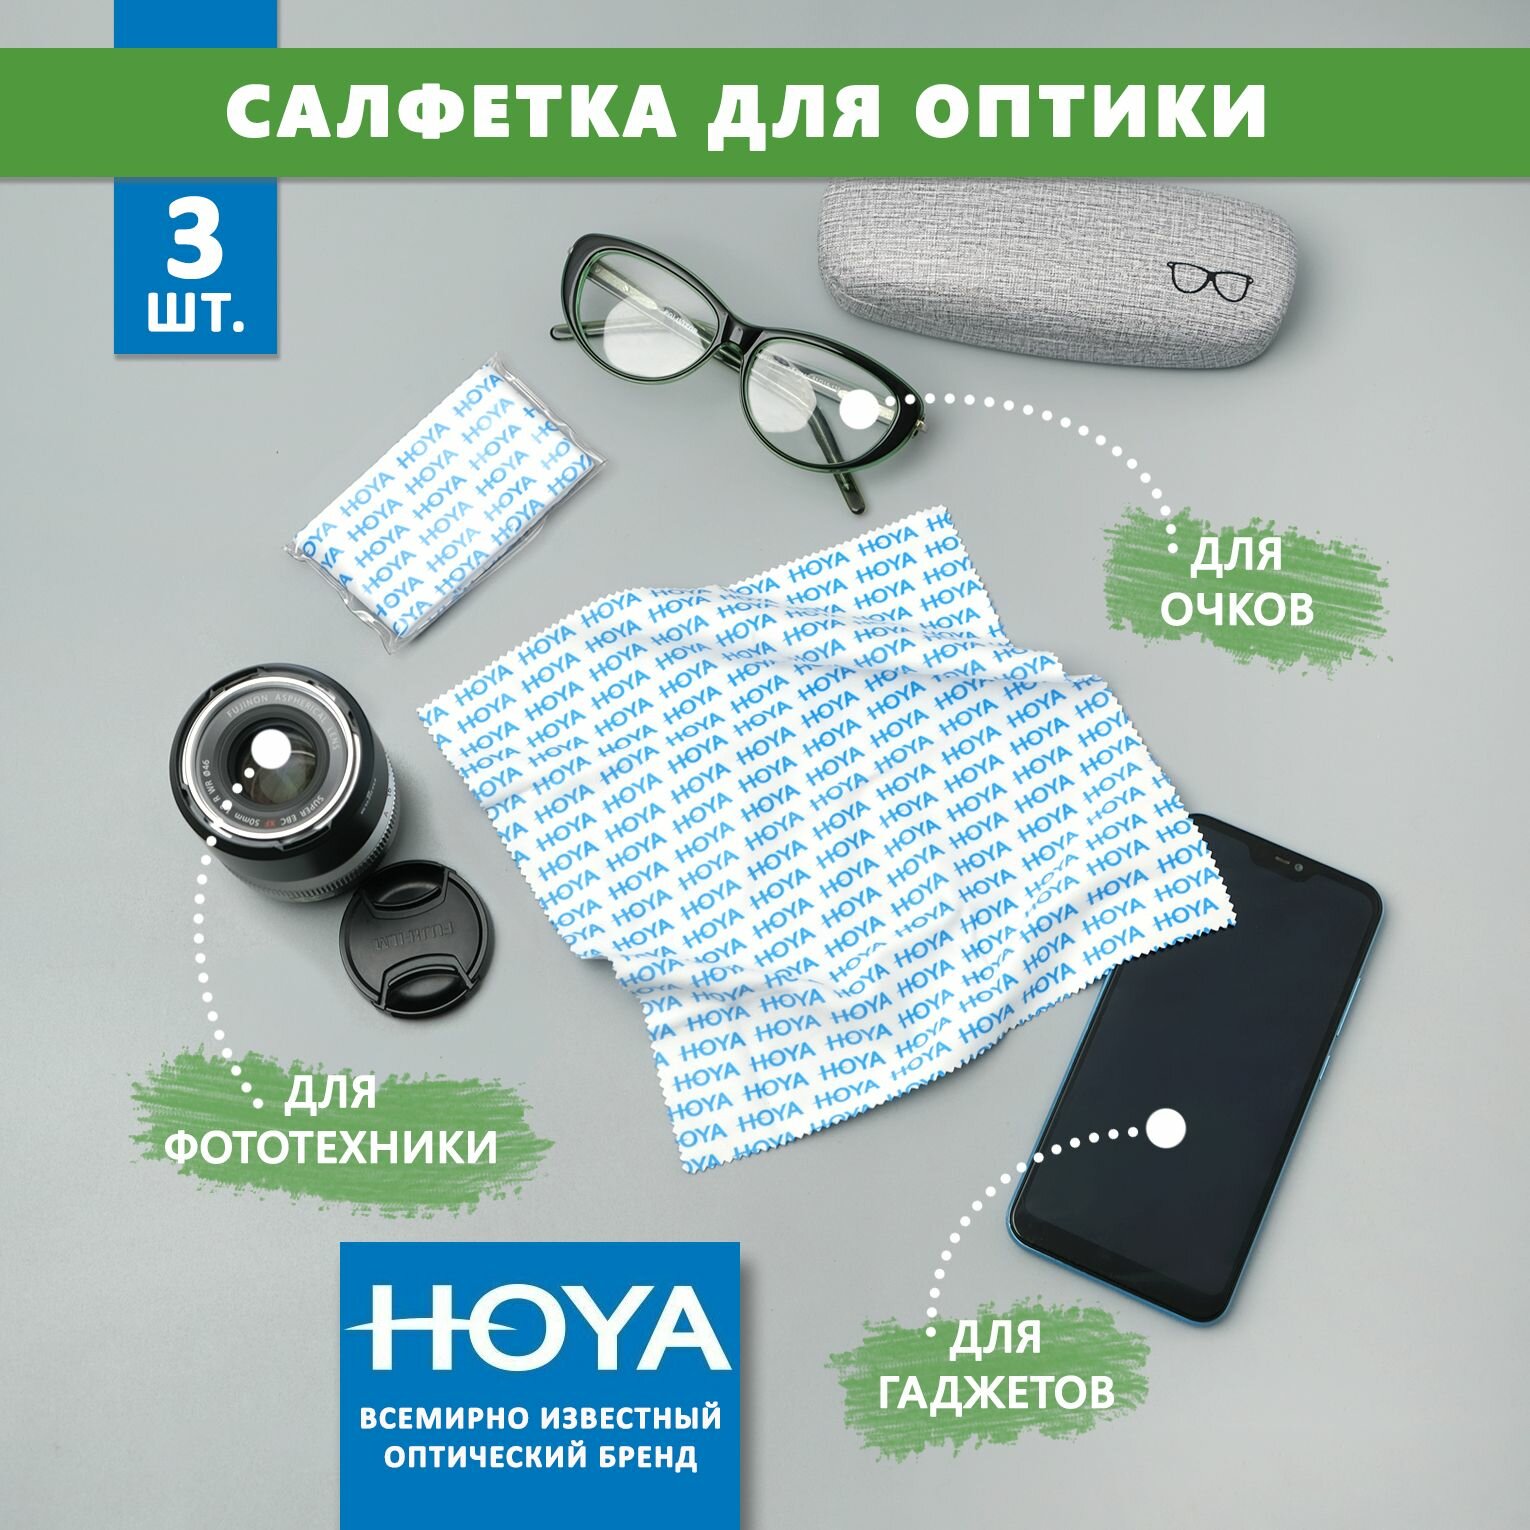 3 Больших фирменных салфеток Hoya для протирки очков, уходом за сотовыми телефонами электронными гаджетами и объективами фотоаппаратов.